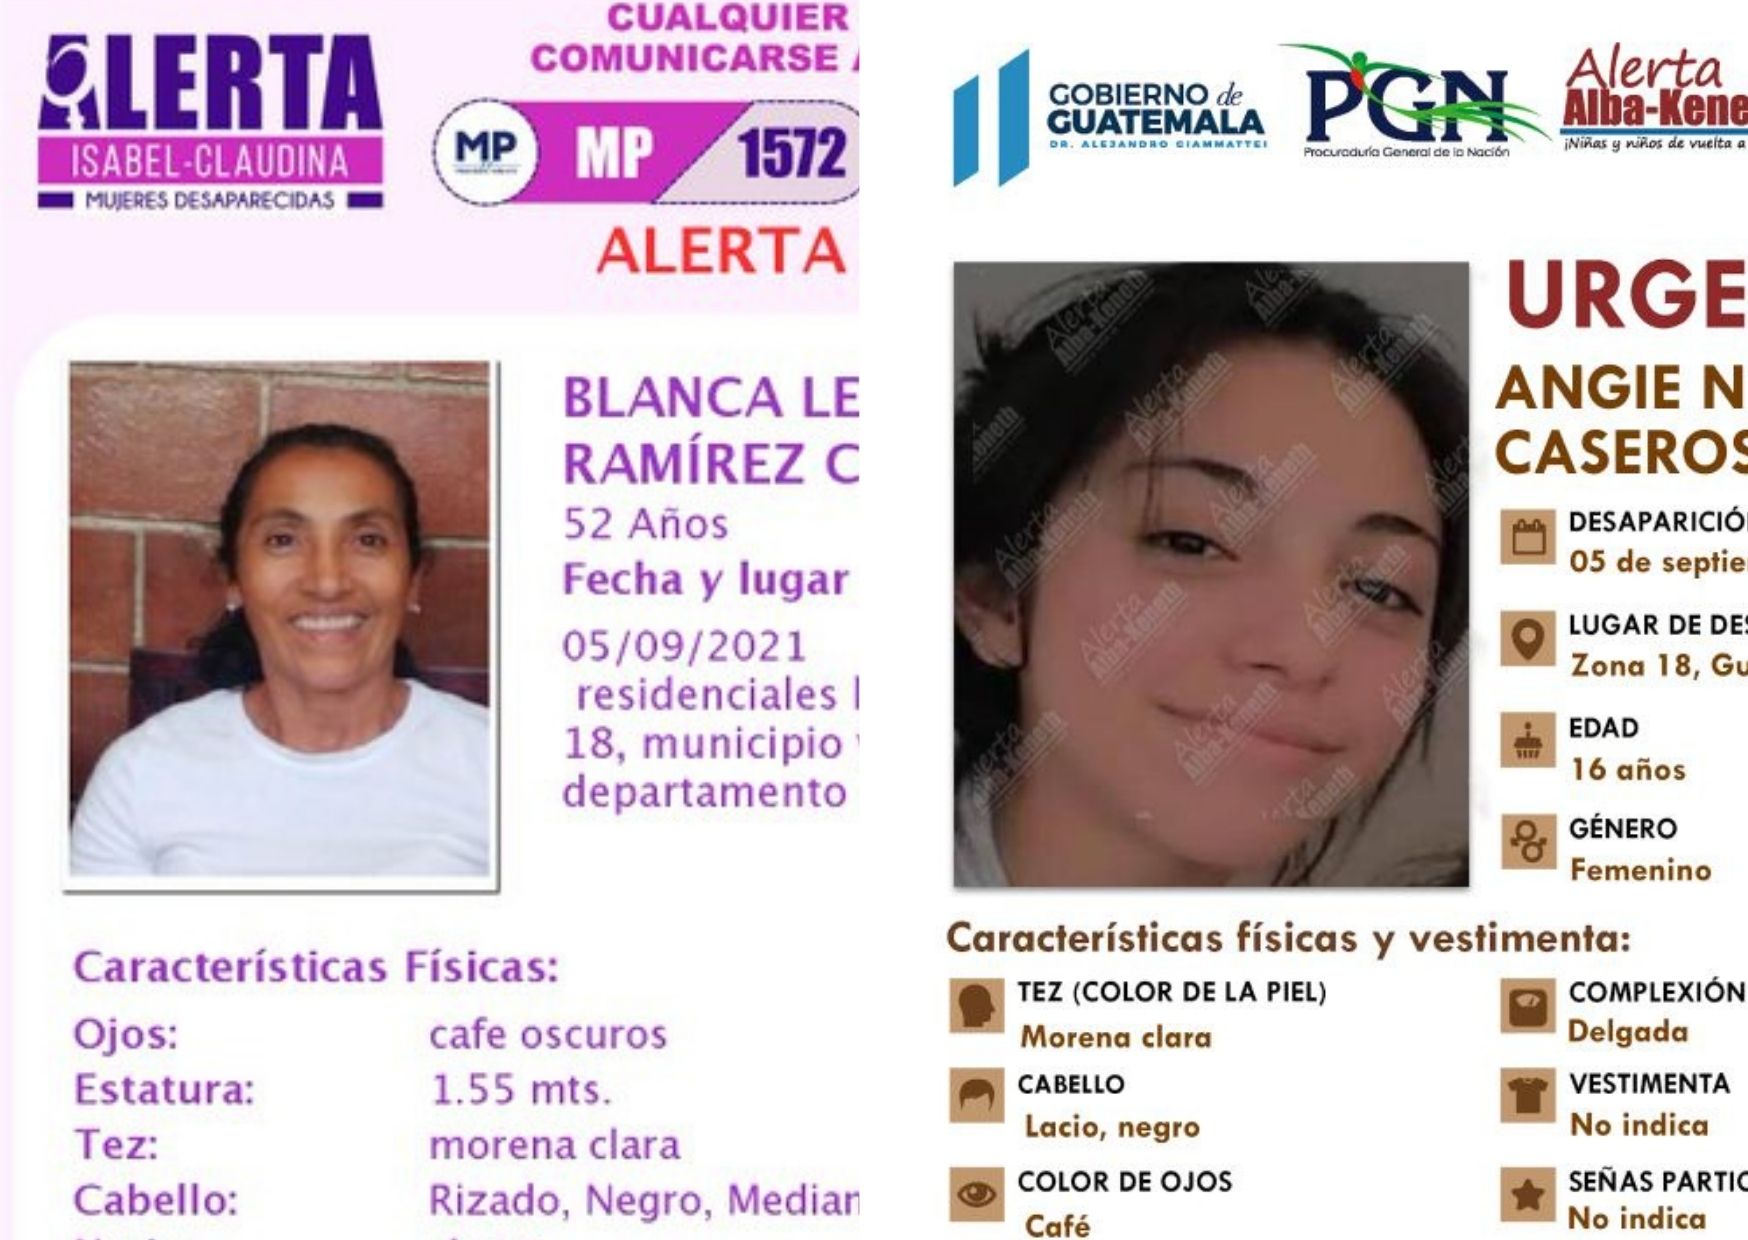 El día que Blanca y Angie desaparecieron se registró un incidente en la casa donde vivían en la colonia Los Olivos, zona 18. (Foto Prensa Libre)